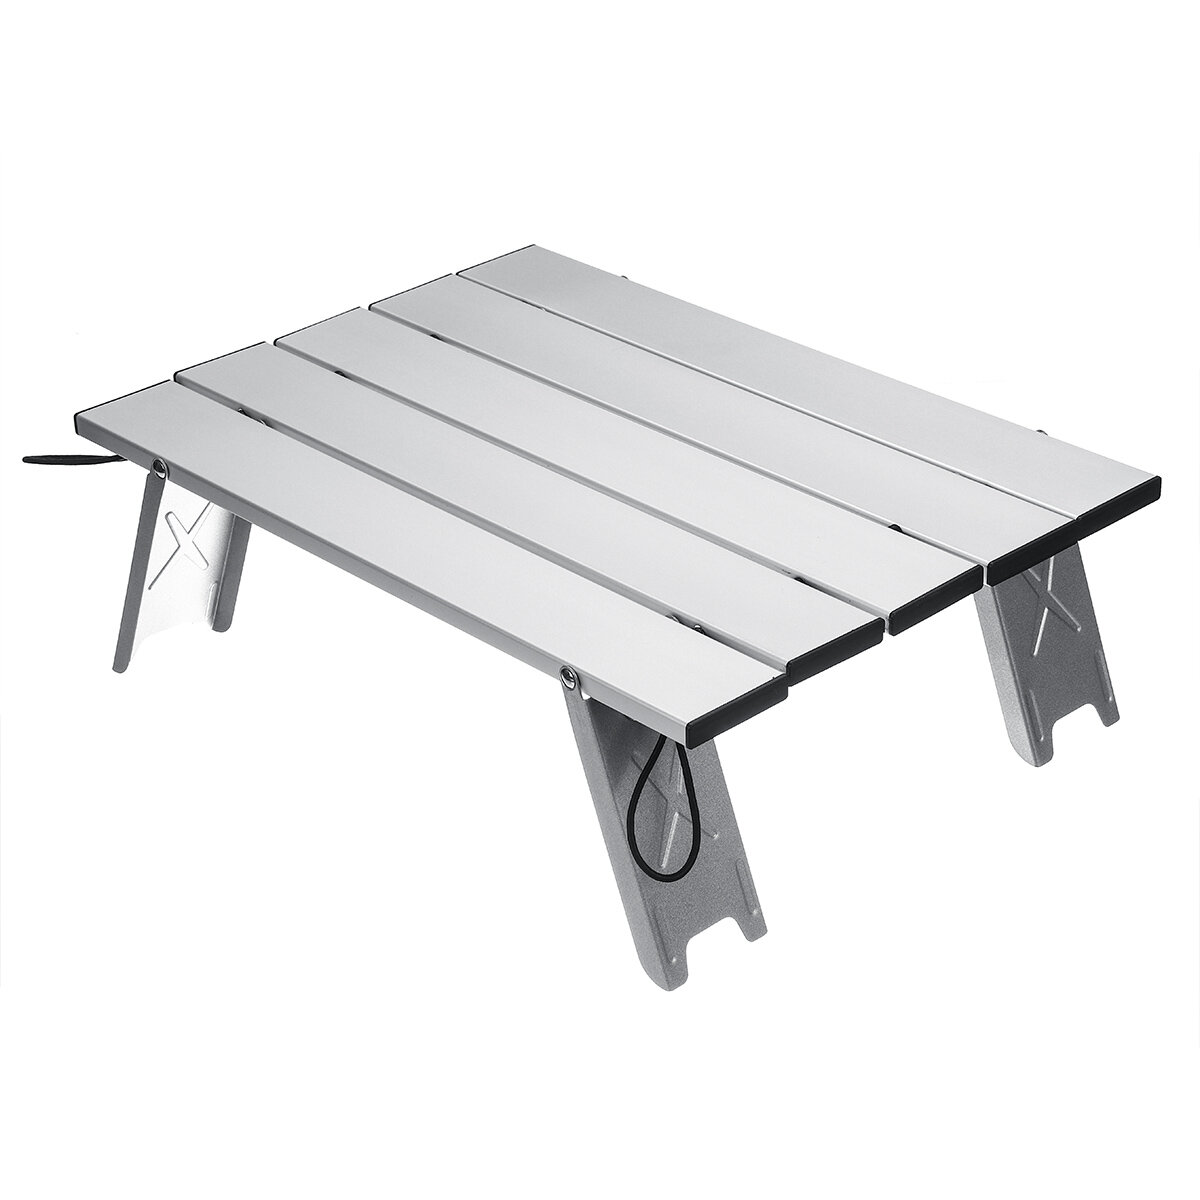 Silla de mesa plegable portátil al aire libre cámping Mesa de picnic de aleación de aluminio Impermeable Mesa duradera ultraligera 40x29x12cm